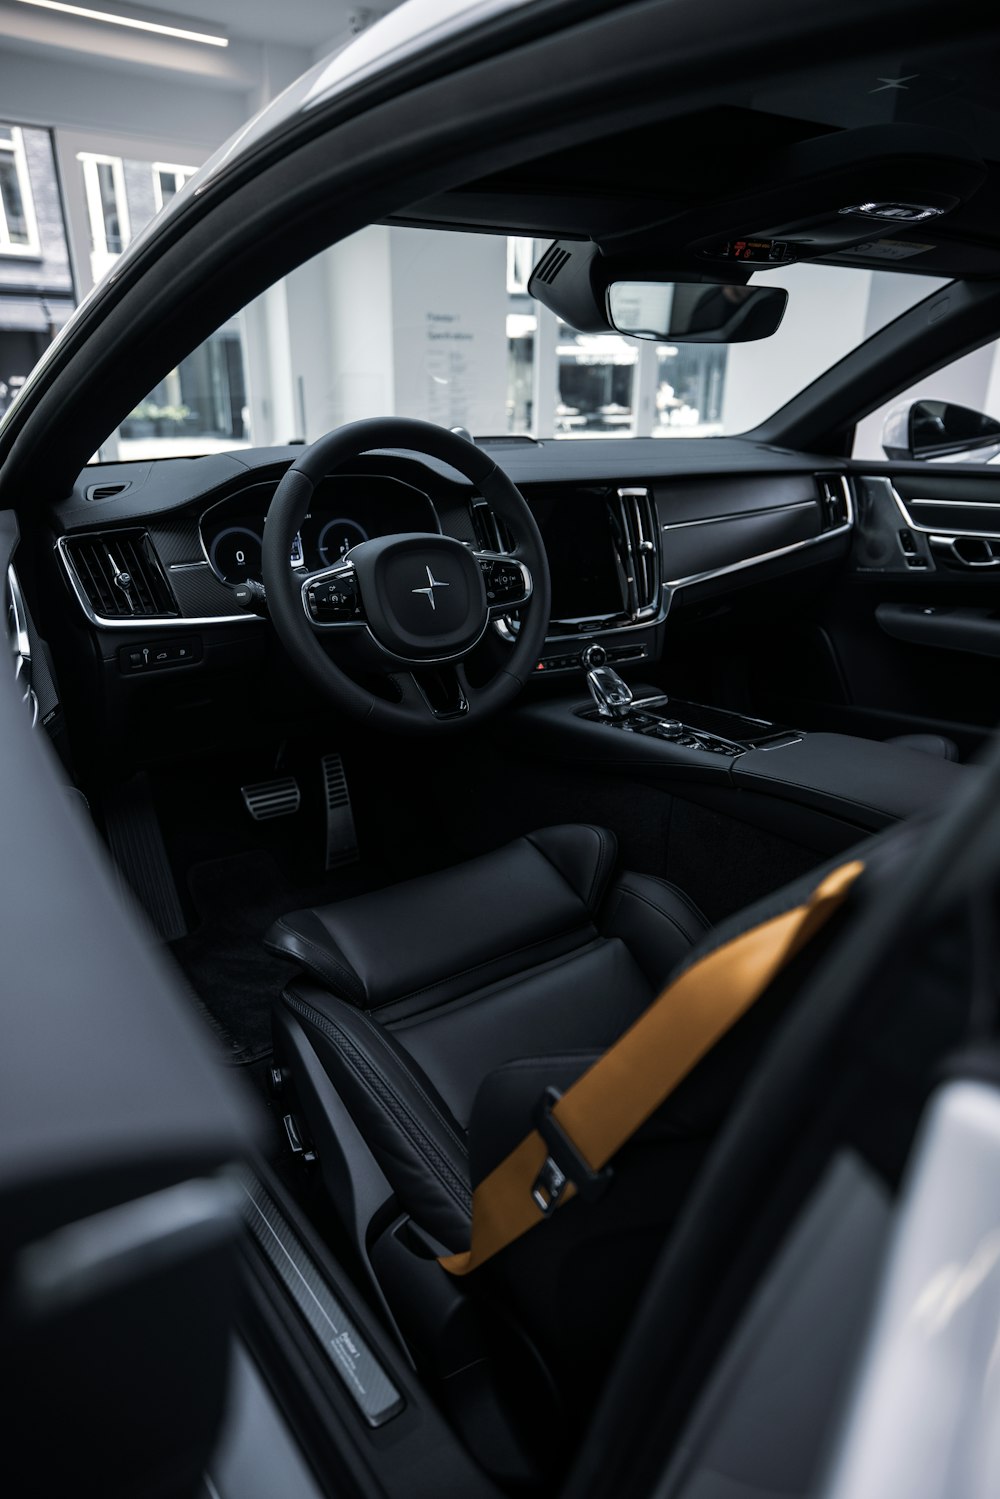 black and brown car interior